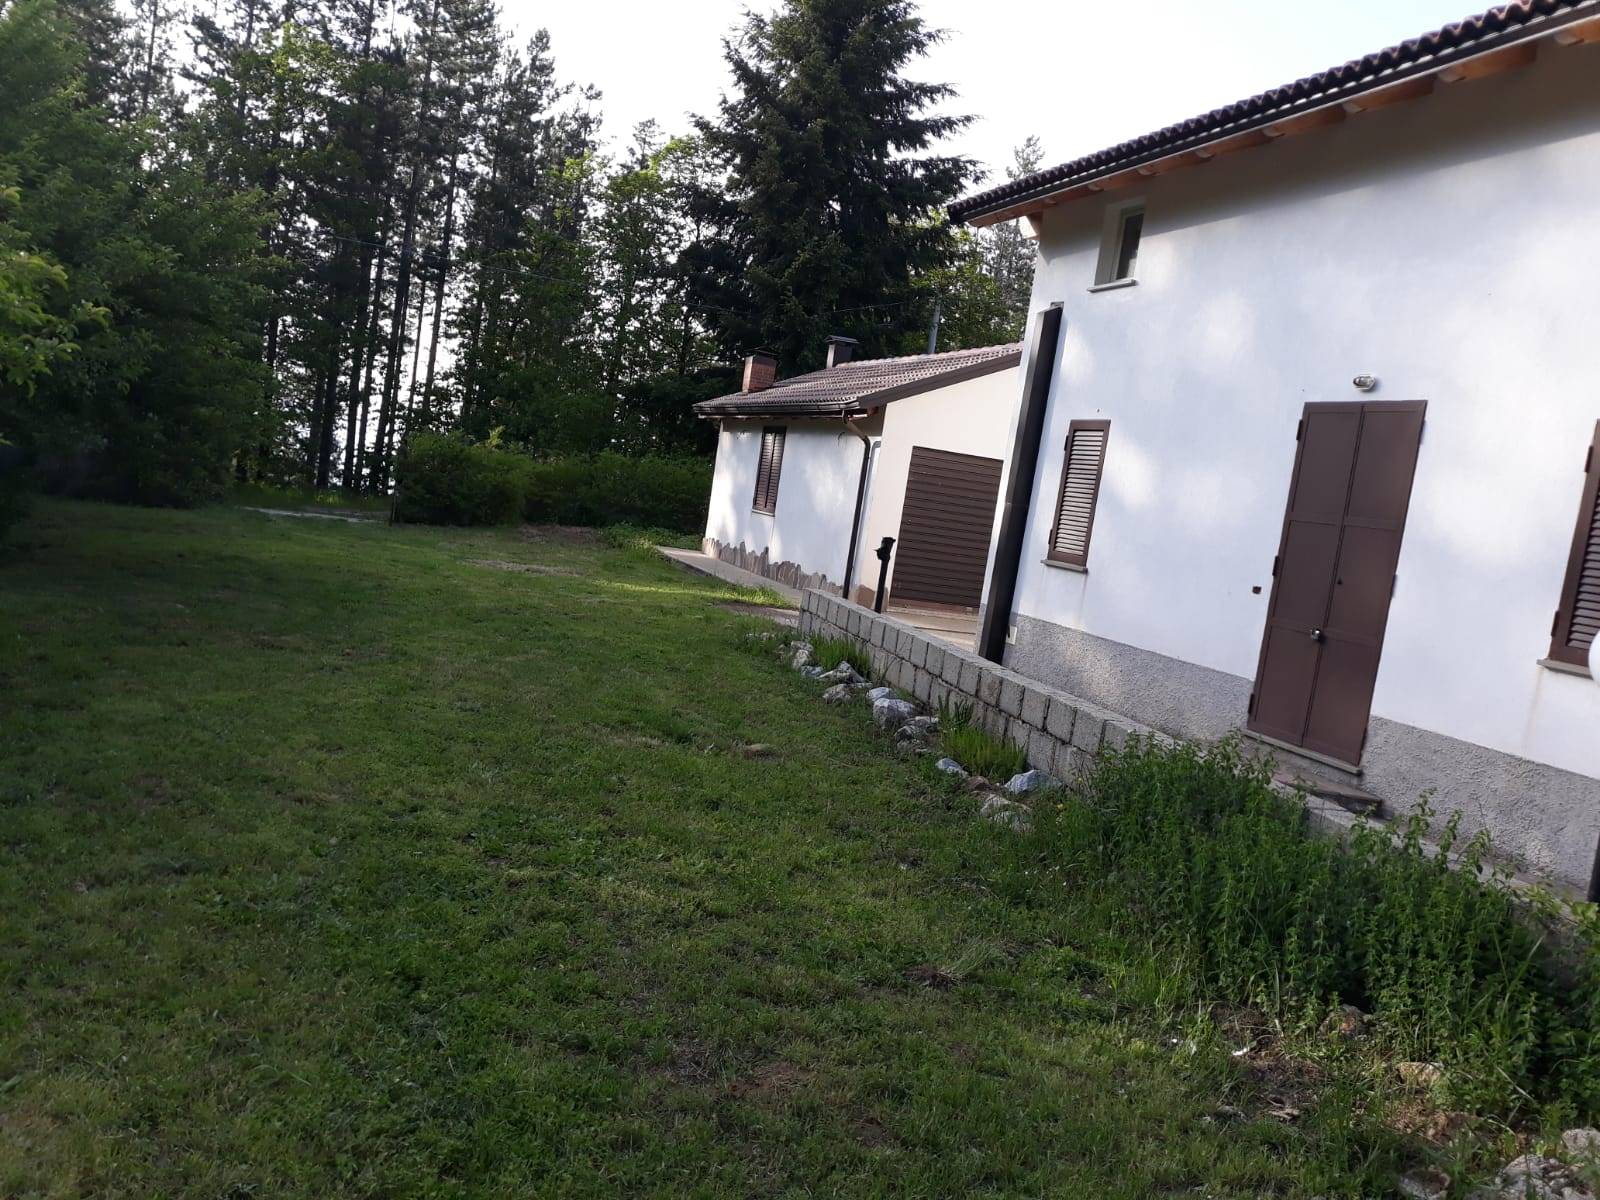 Villa in affitto a Spezzano della Sila, 4 locali, zona gliatello Silano, prezzo € 600 | PortaleAgenzieImmobiliari.it